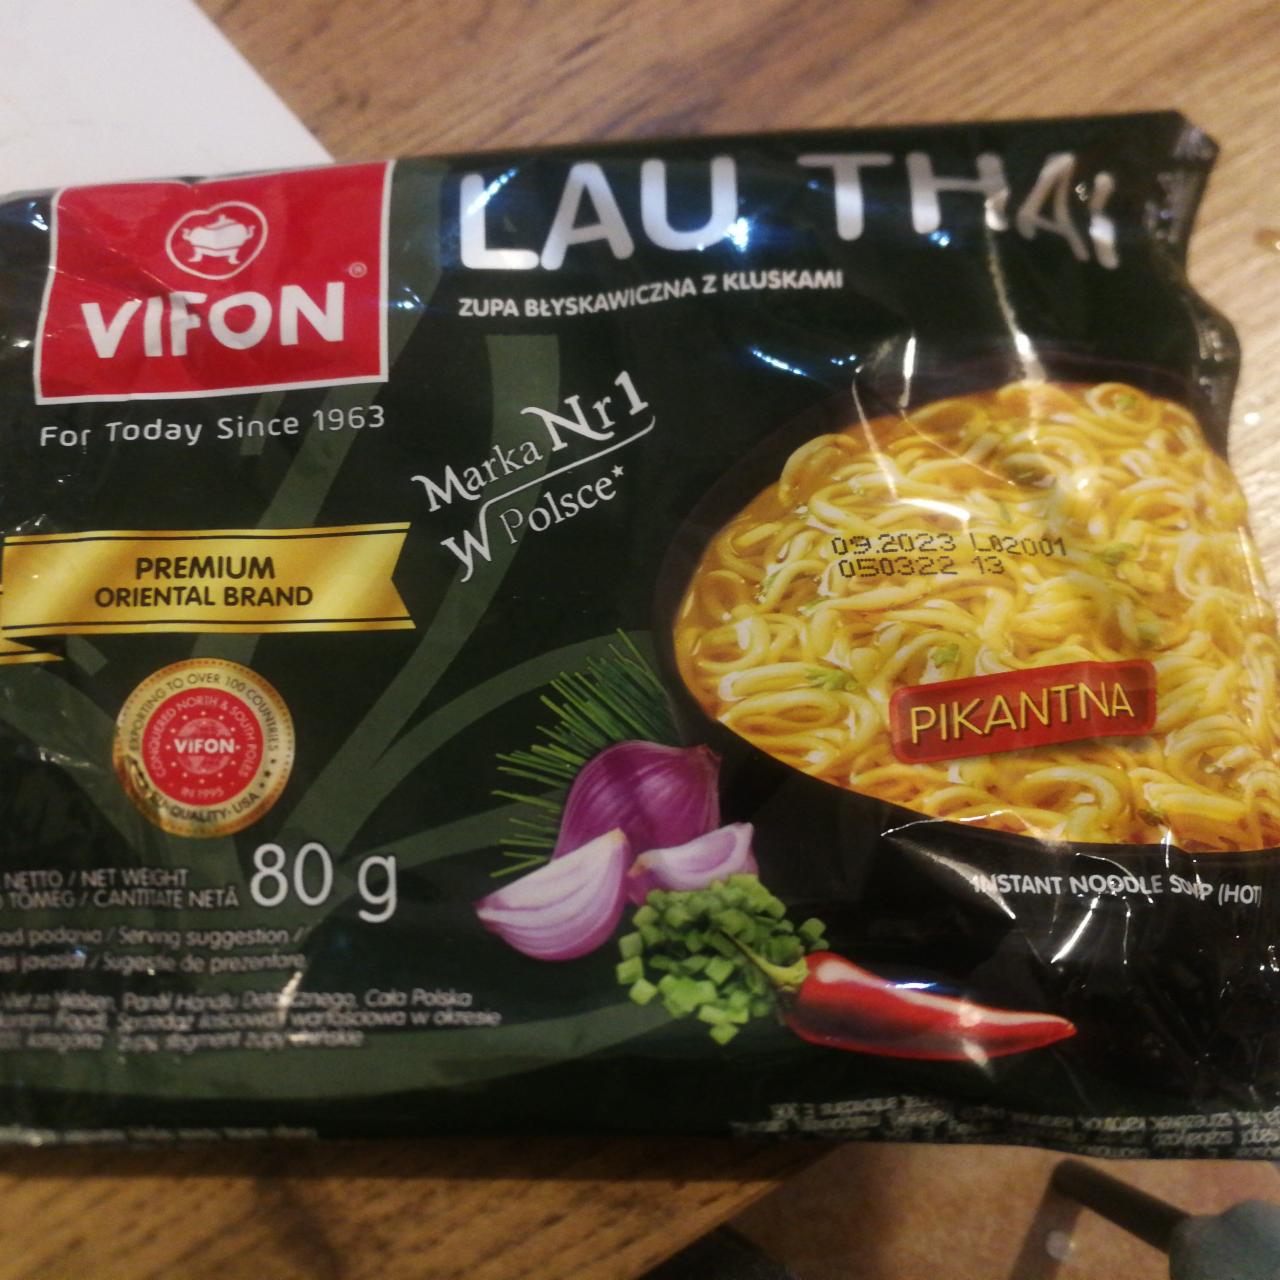 Zdjęcia - Lau Thai Zupa błyskawiczna z kluskami pikantna Vifon